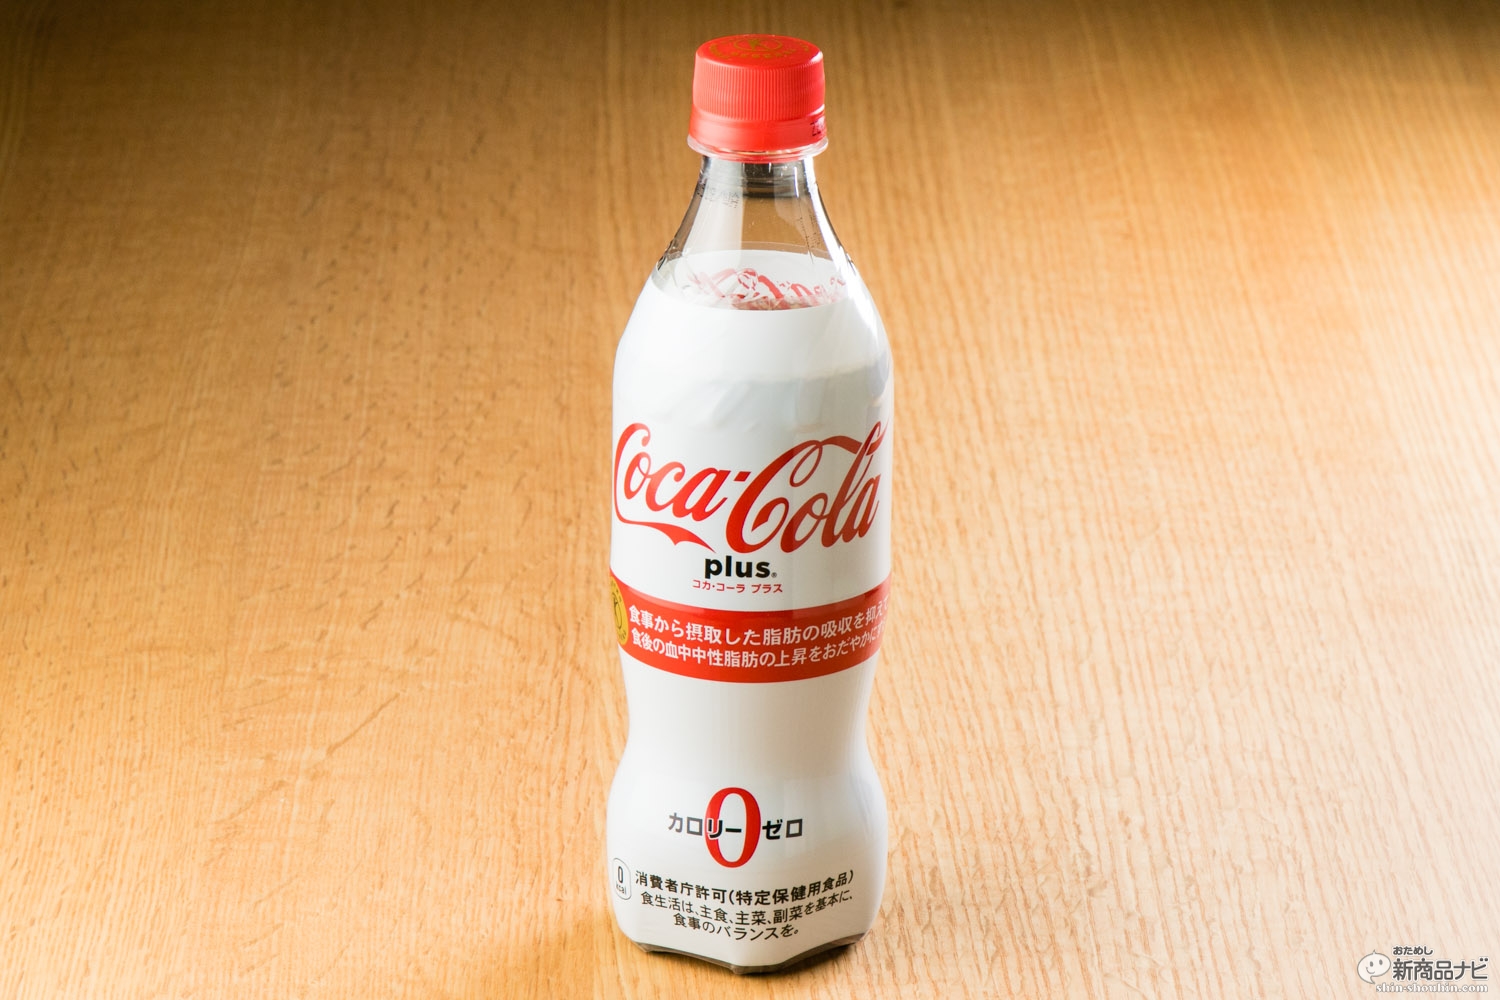 おためし新商品ナビ » Blog Archive » 縮小傾向のトクホコーラの突破口となるか、『コカ・コーラ プラス』をコーラ好きが飲んでみた！